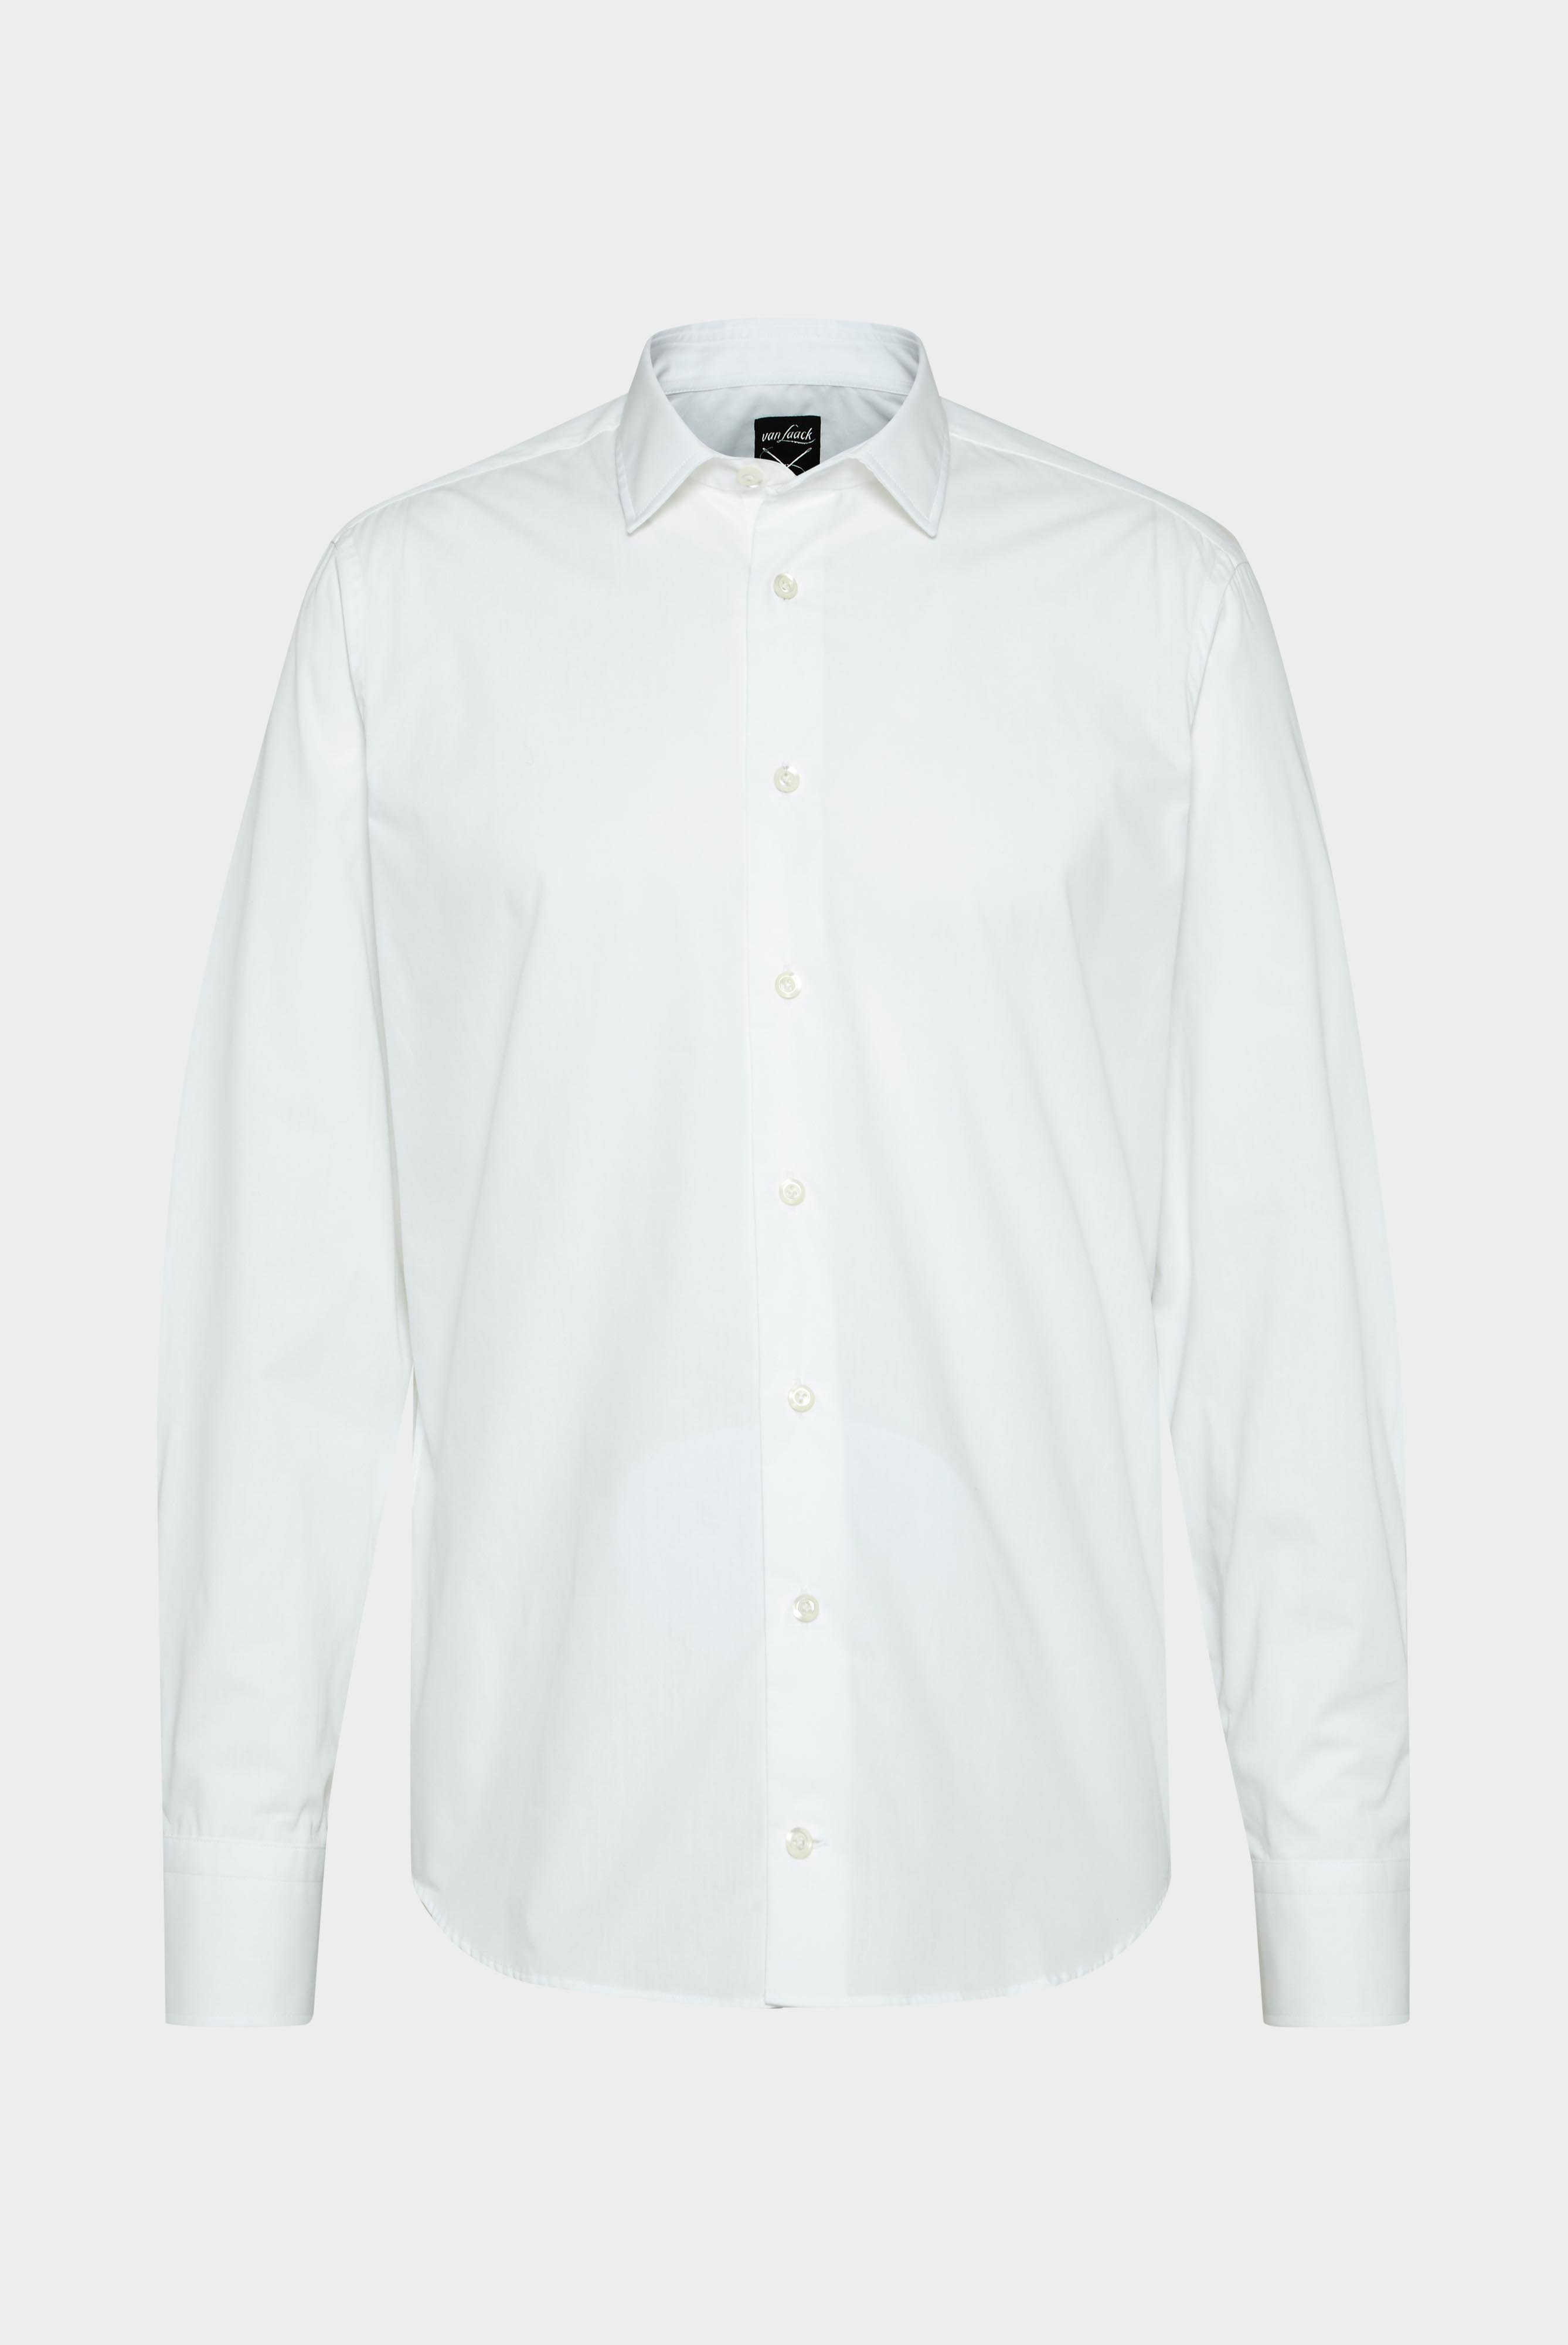 Bügelleichte Hemden+Bügelfreies Hemd Tailor Fit+20.3281.NV.150098.000.37